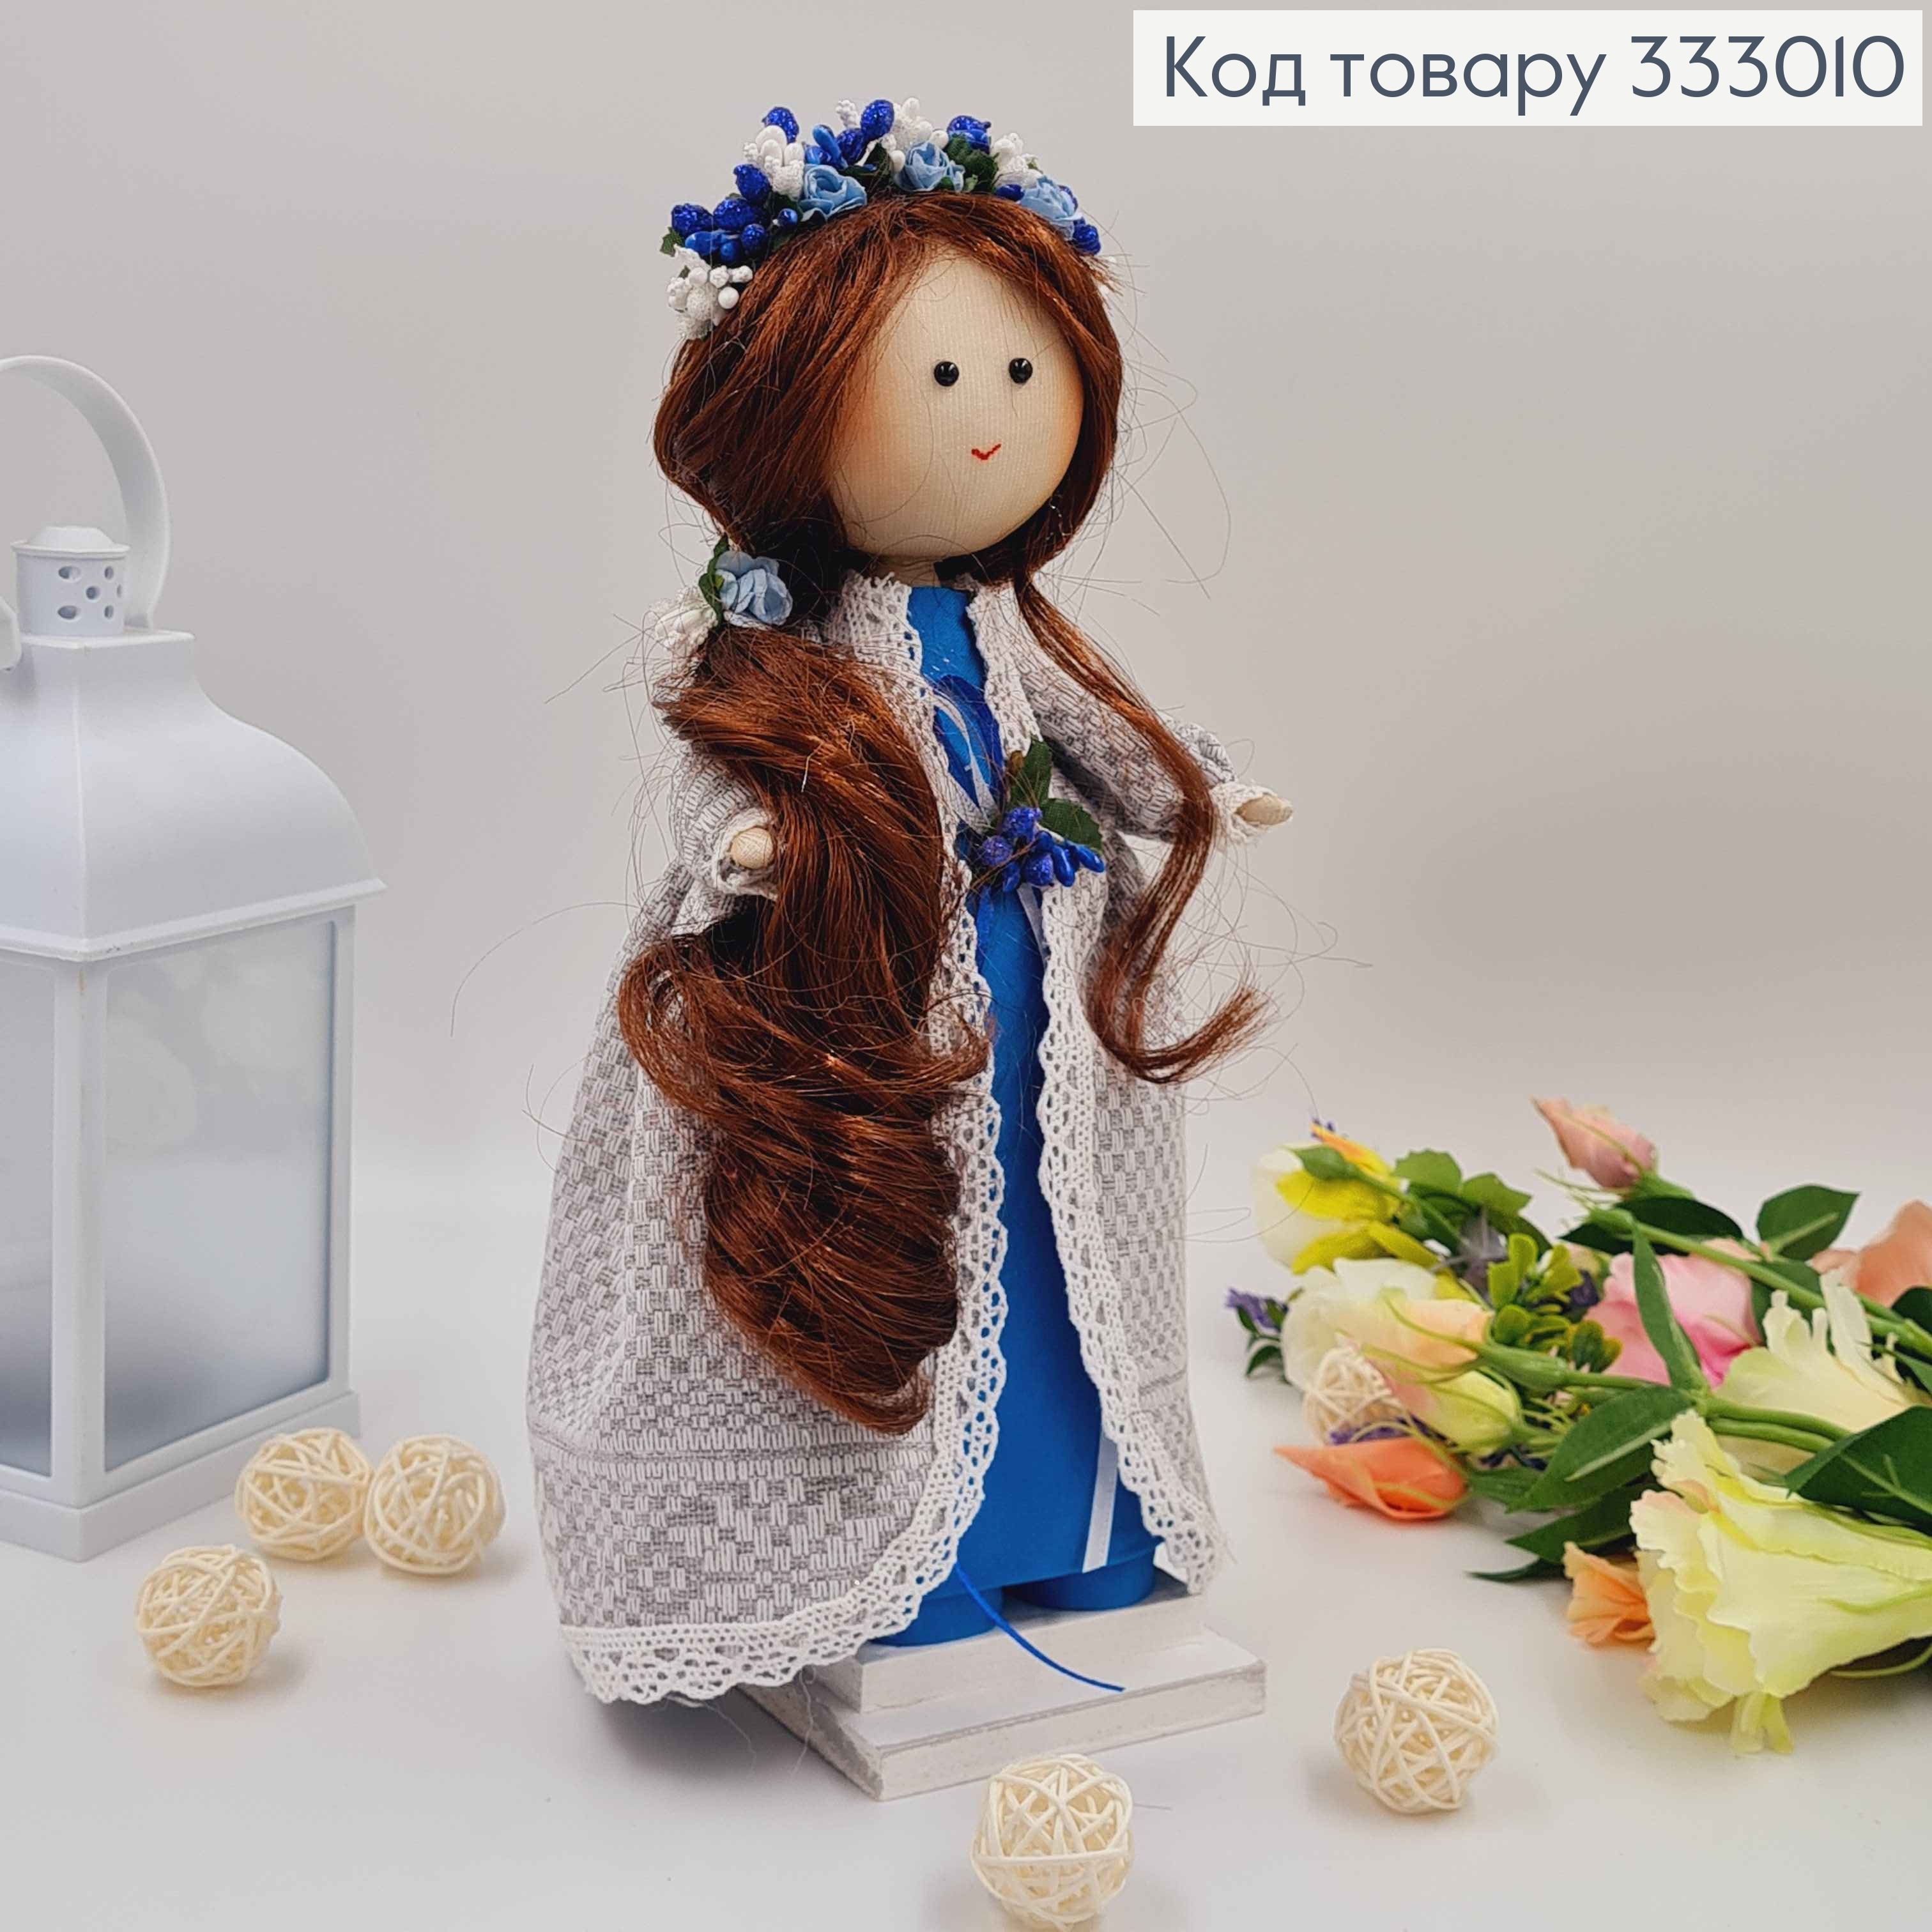 Кукла ДЕВОЧКА, "С русыми волосами" в длинном сером кардигане, высота 32см, ручная работа, Украина. 333010 фото 2